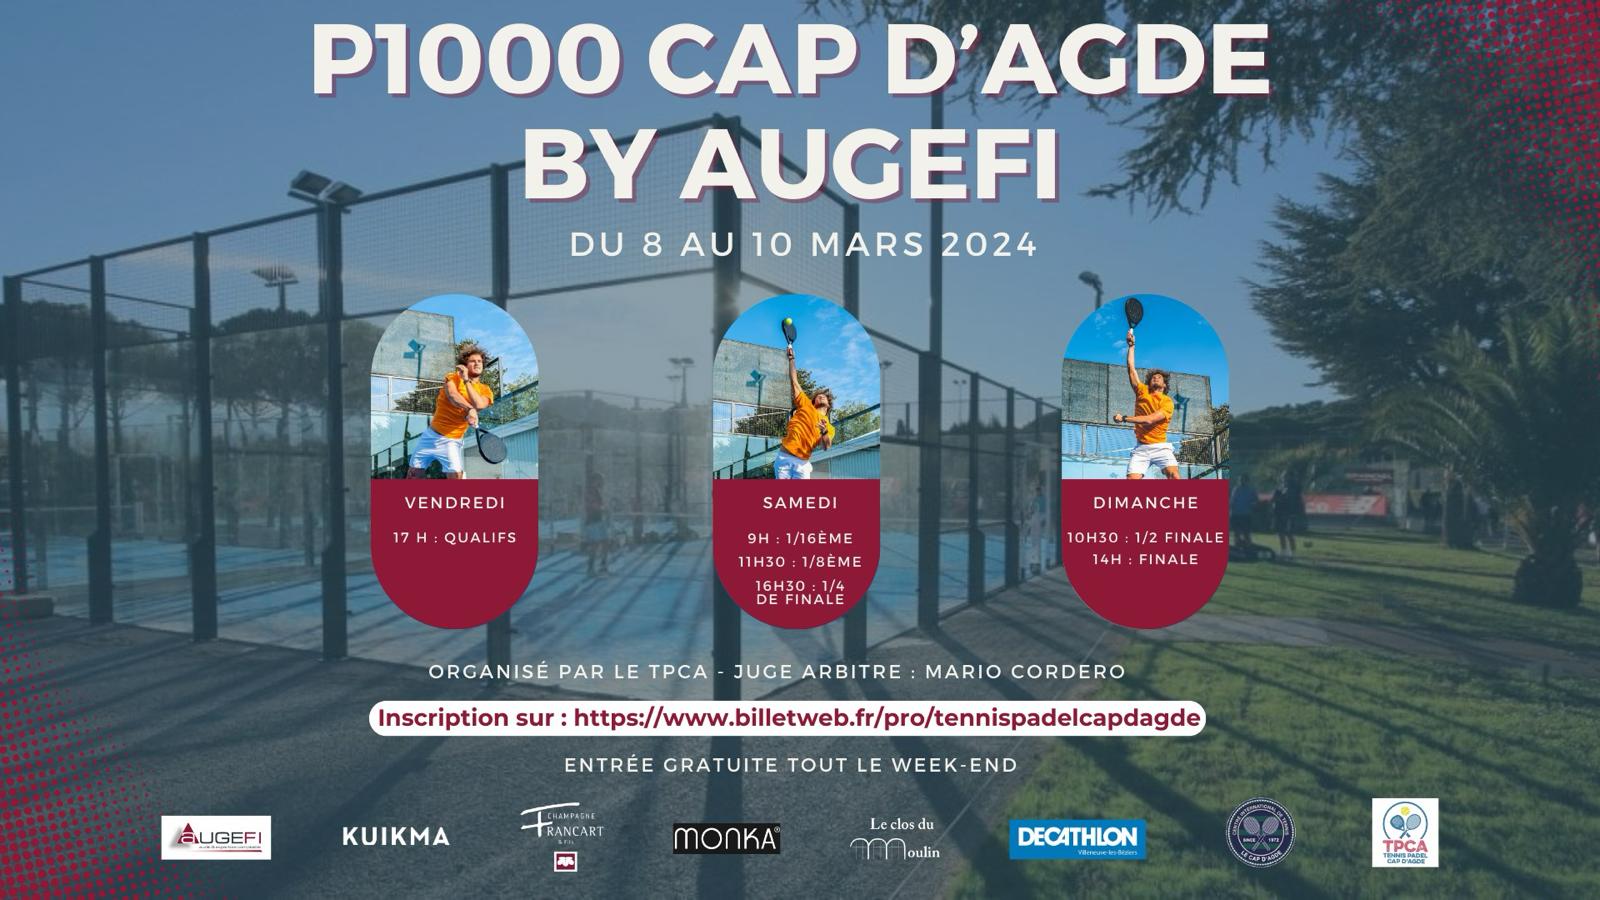 ¡El P1000 Cap d'Agde de Augefi del 8 al 10 de marzo de 2024!